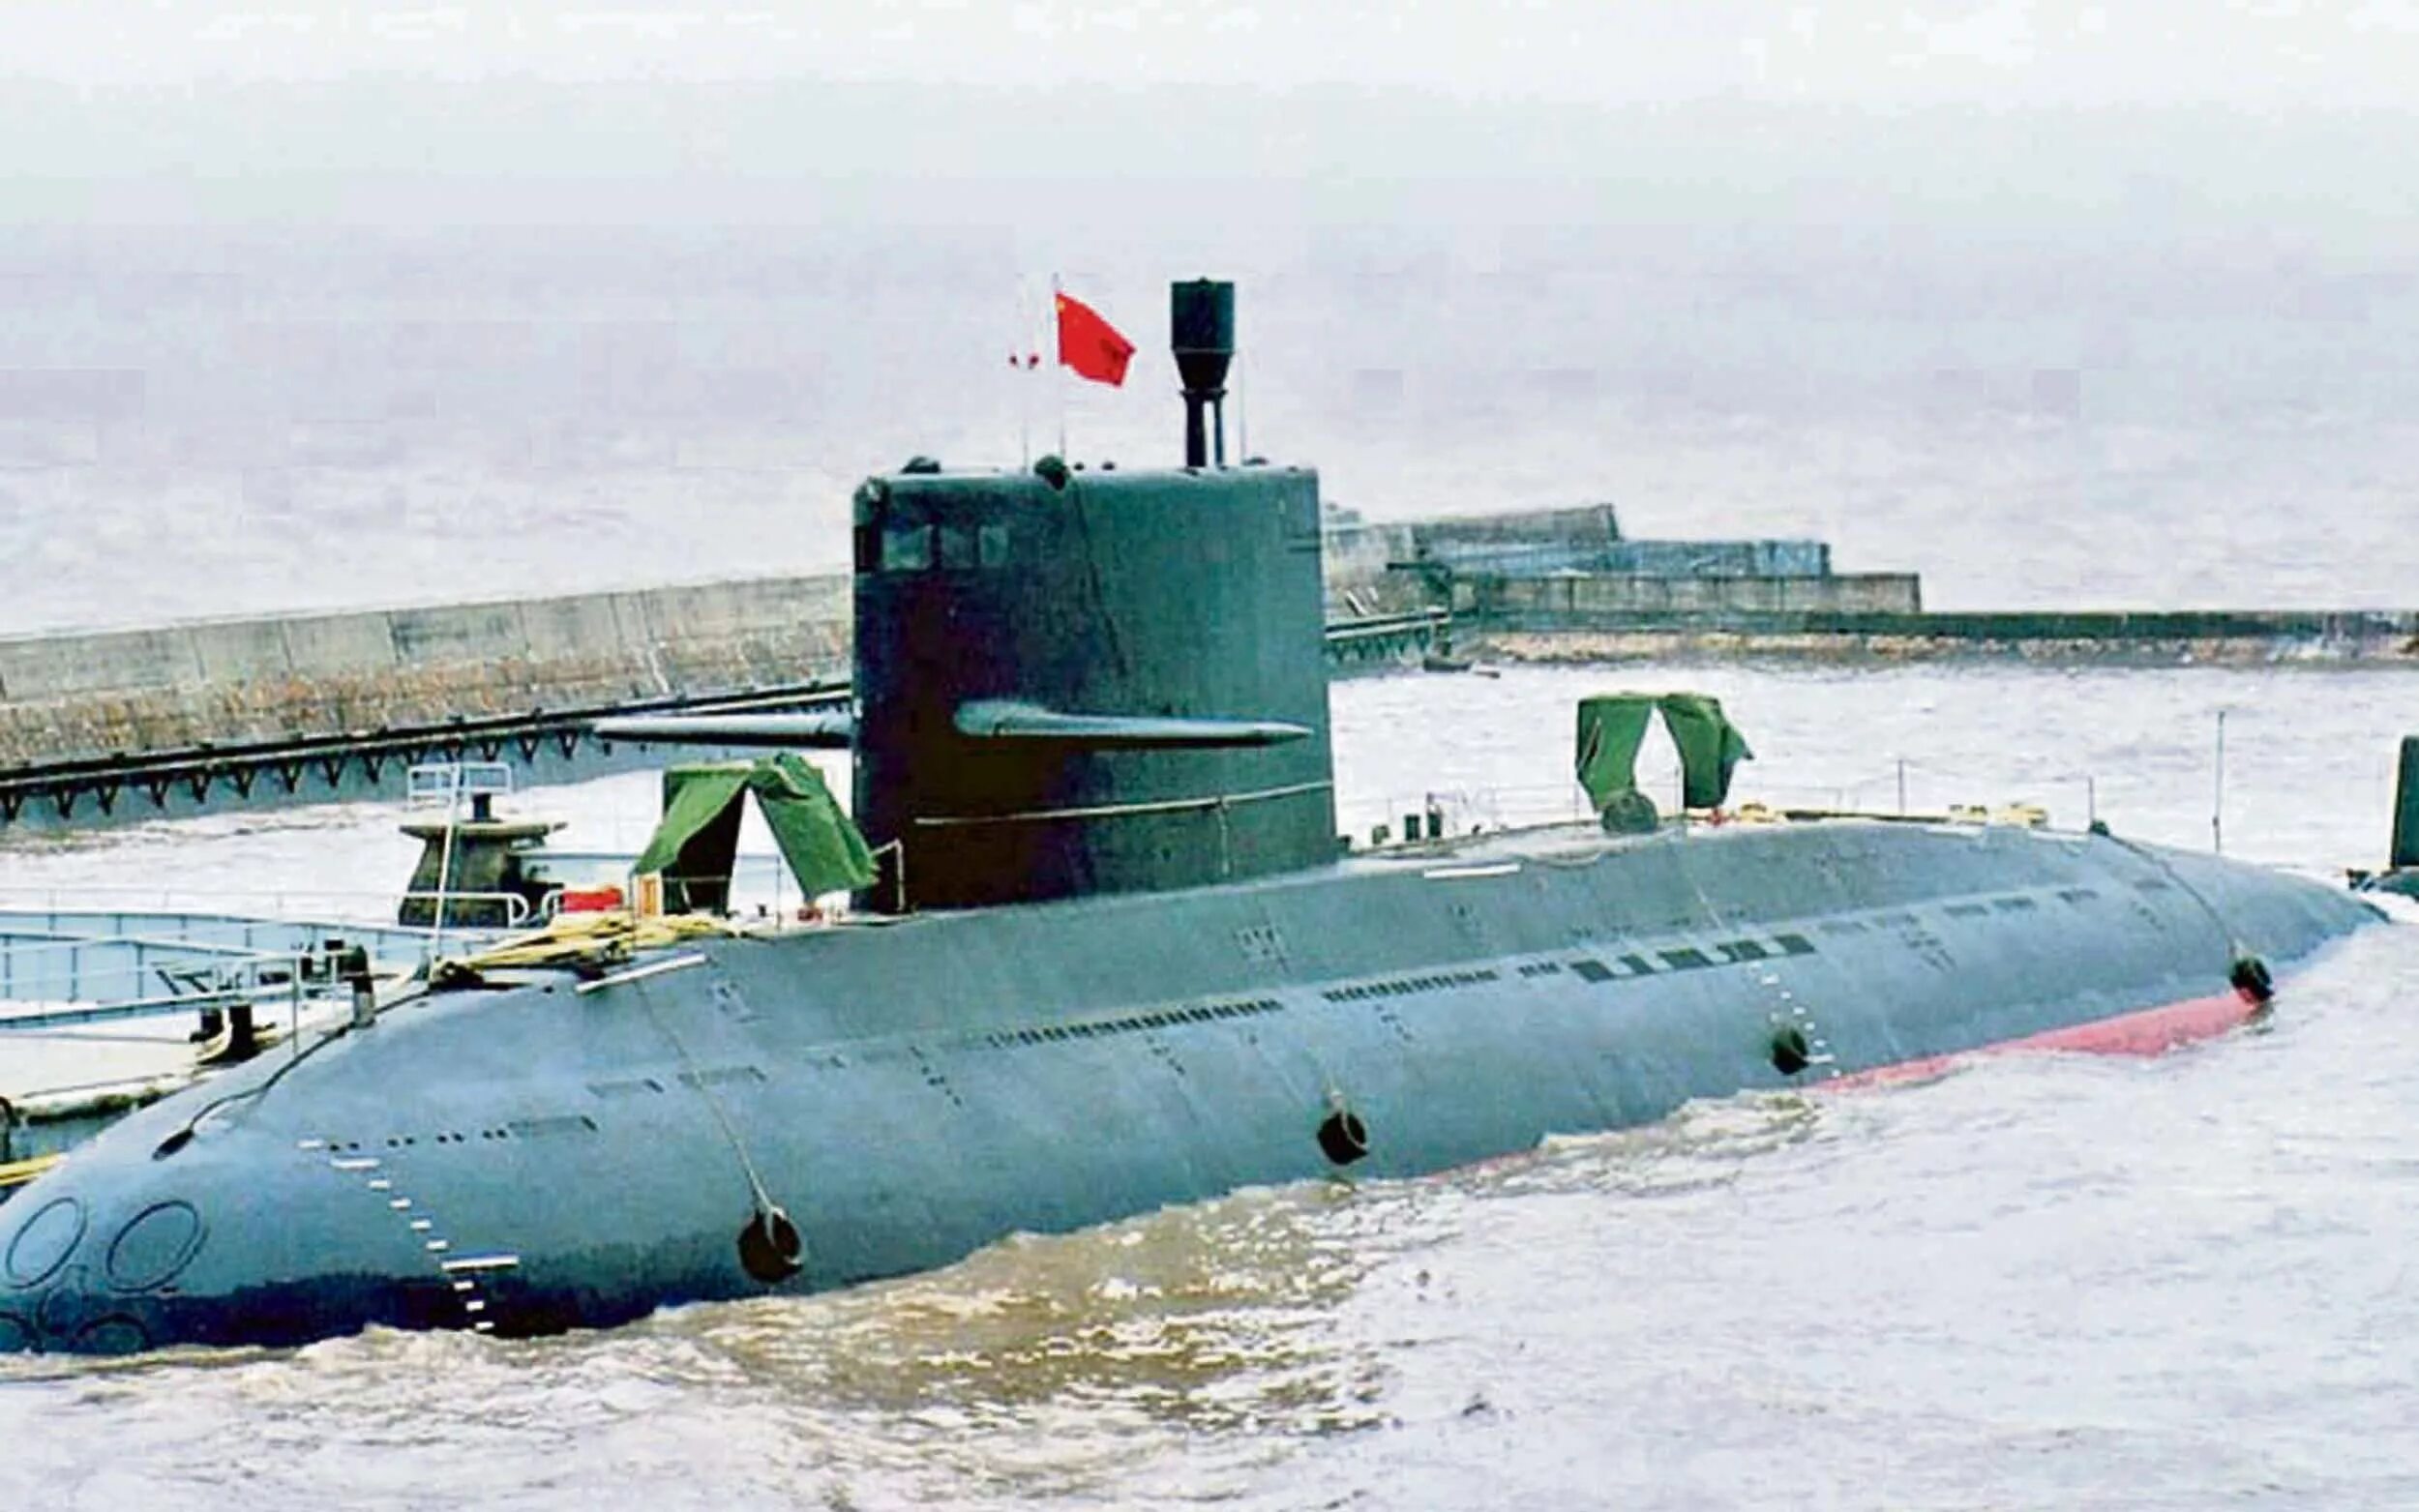 Виды пл. Подводные лодки проекта 094 «Цзинь». Дизель-электрическая подводная лодка ВМС Китая проекта 041. Пл Тип 039 Сонг. Подлодка 039a Yuan.